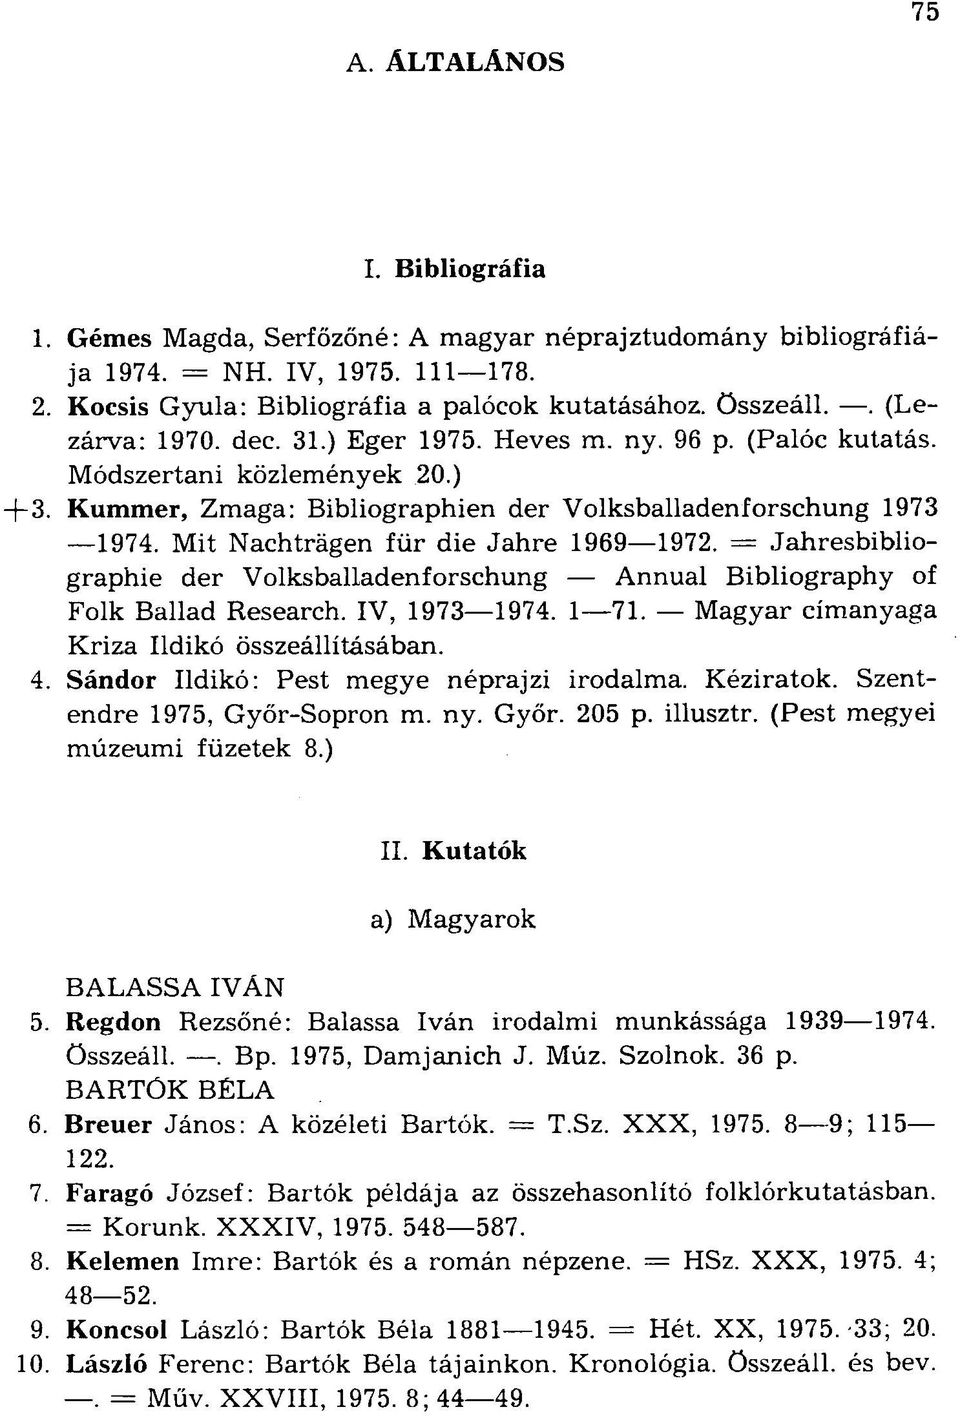 Mit Nachträgen für die Jahre 1969 1972. = Jahresbibliographie der Volksballadenforschung Annual Bibliography of Folk Ballad Research. IV, 1973 1974. 1 71.